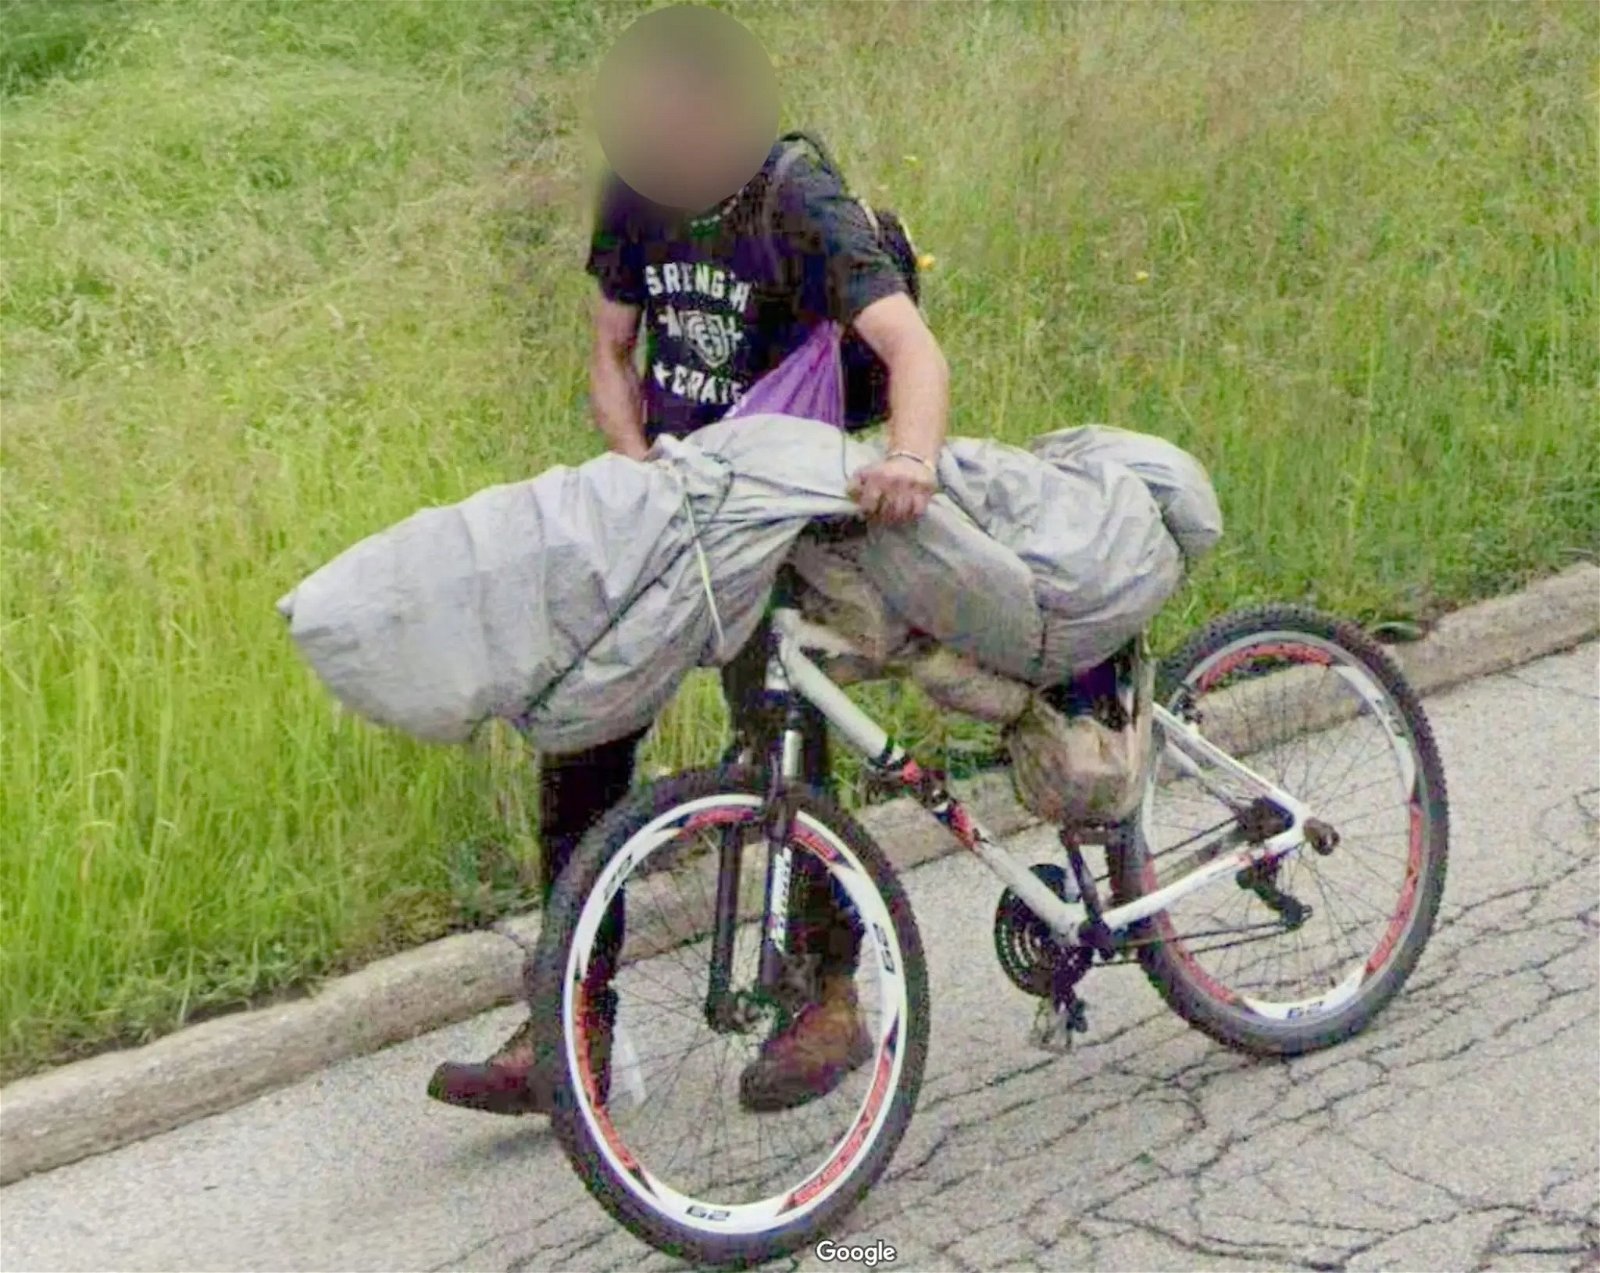  Una persona lleva lo que supuestamente es un cadáver en su bicicleta